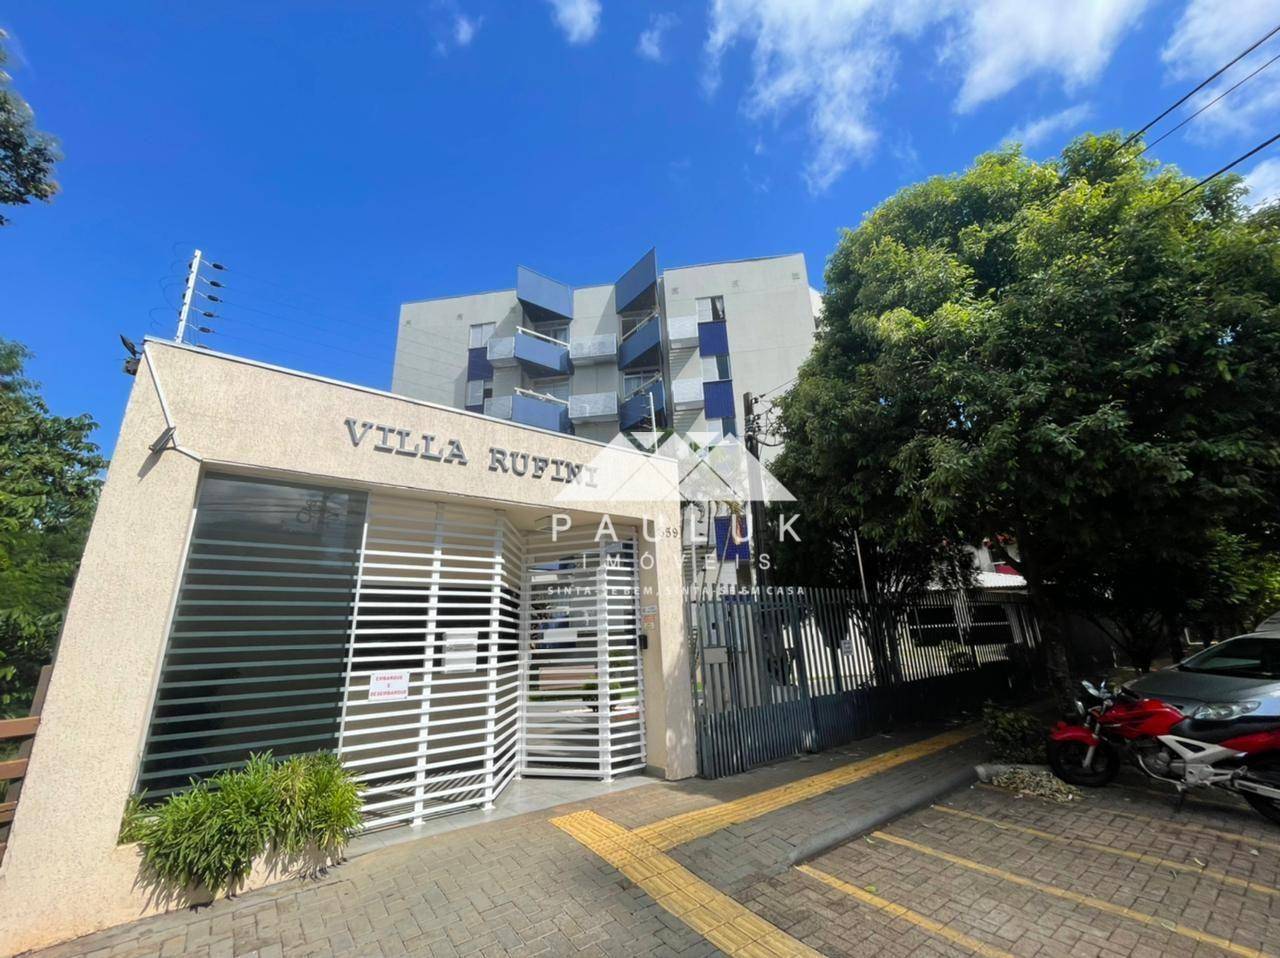 Apartamento com 3 Dormitórios Sendo 1 Suíte à venda Por R$ 400.000 - Condominio Residencial Vila Ruf | PAULUK IMÓVEIS | Portal OBusca